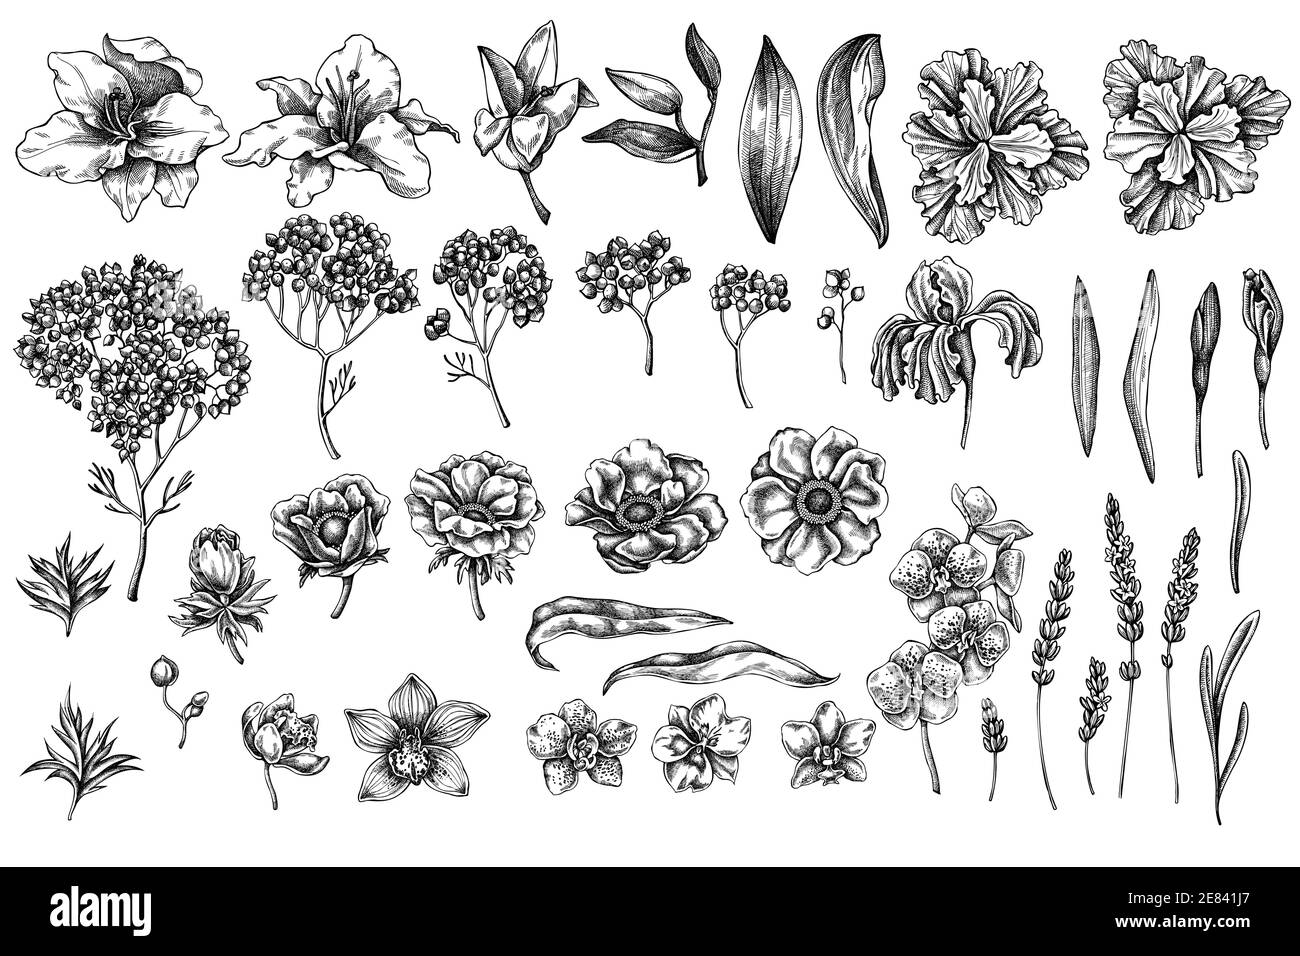 Vektor-Set von Hand gezeichnet schwarz und weiß Anemone, Lavendel, Rosmarin ewig, phalaenopsis, Lilie, Iris Stock Vektor